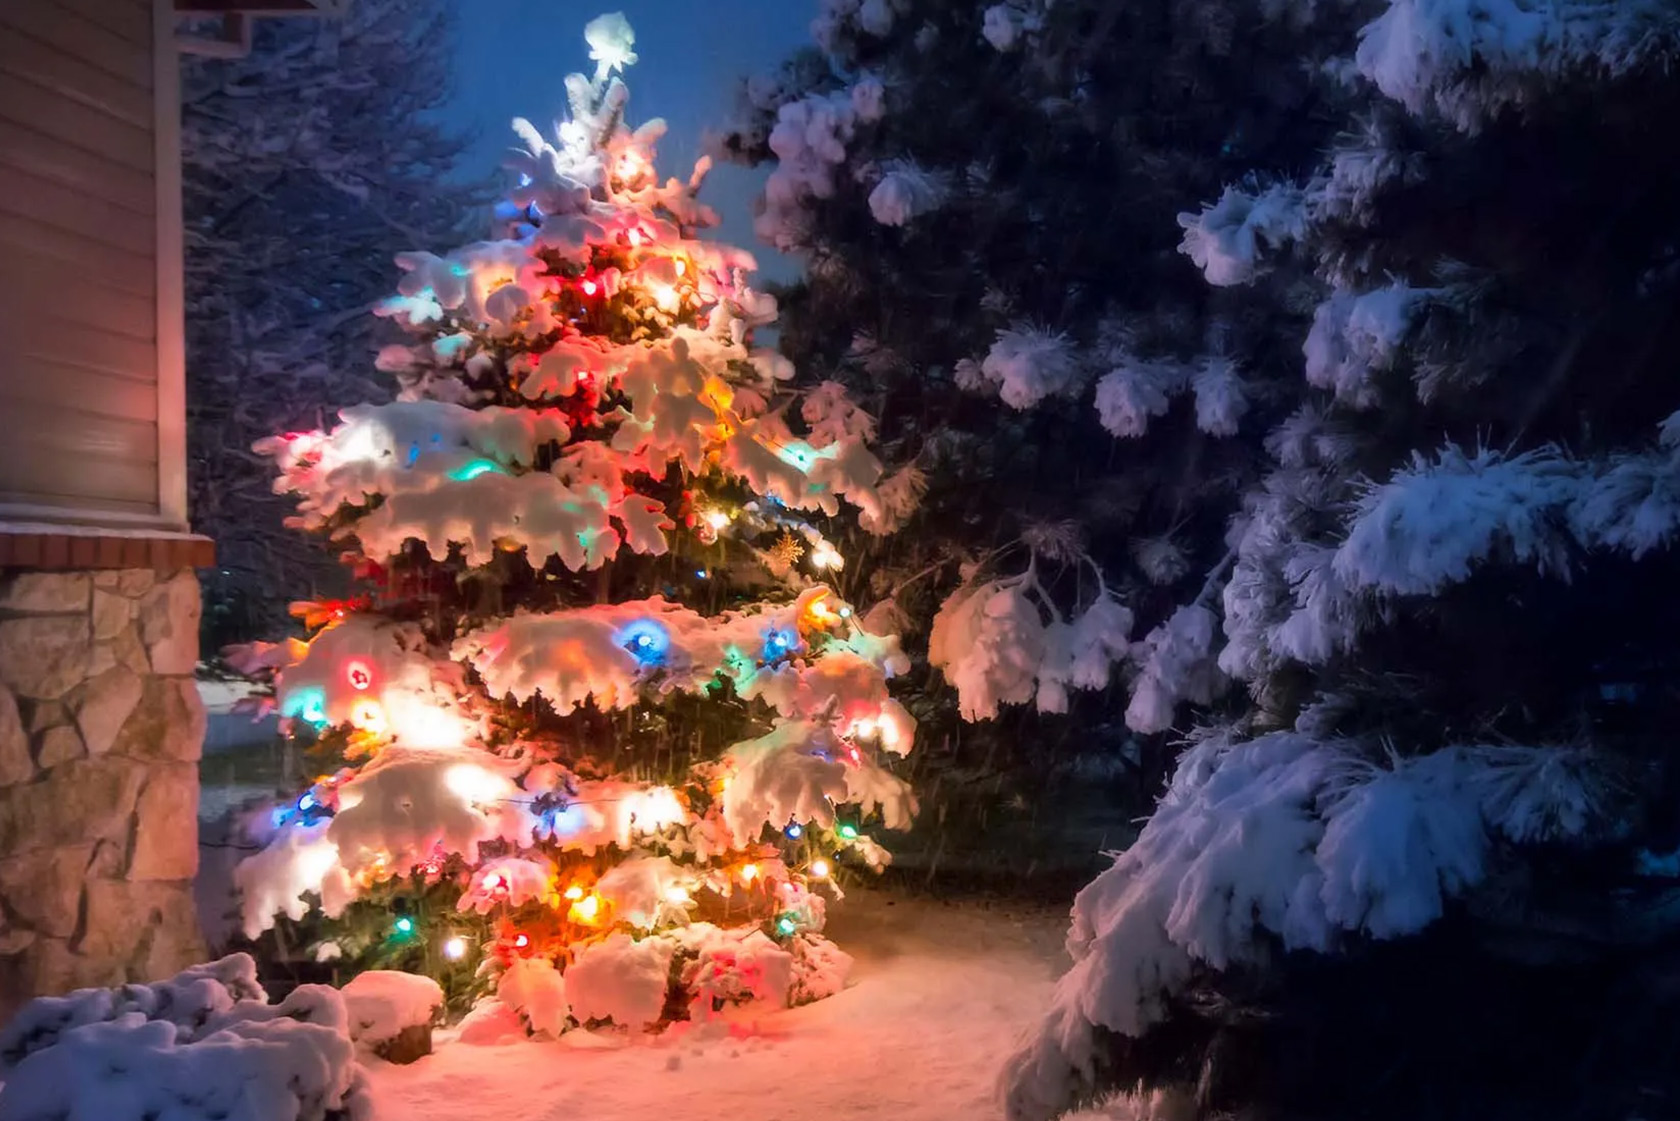 Guirlande lumineuse - étoiles de Noël – Le rêve de Noël